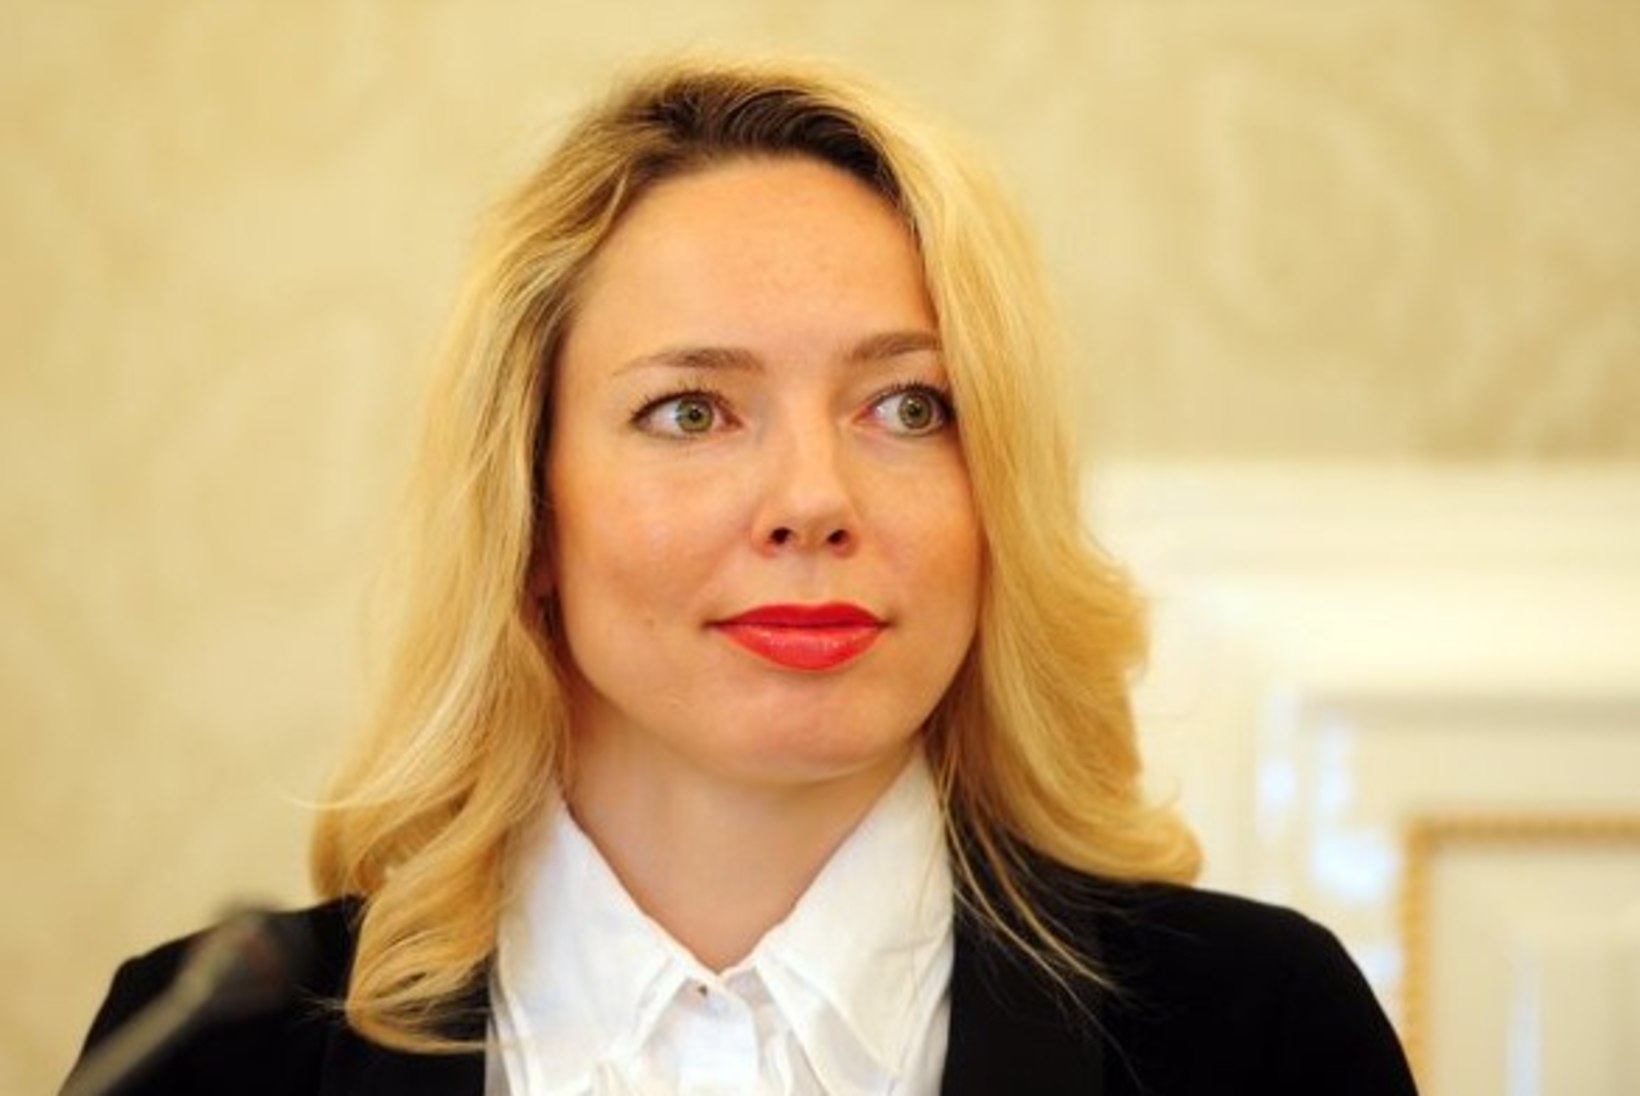 VTB Ühisliiga tegevjuht Ilona Korstin: sari jääb rahvusvaheliseks ega muutu Venemaa siseasjaks